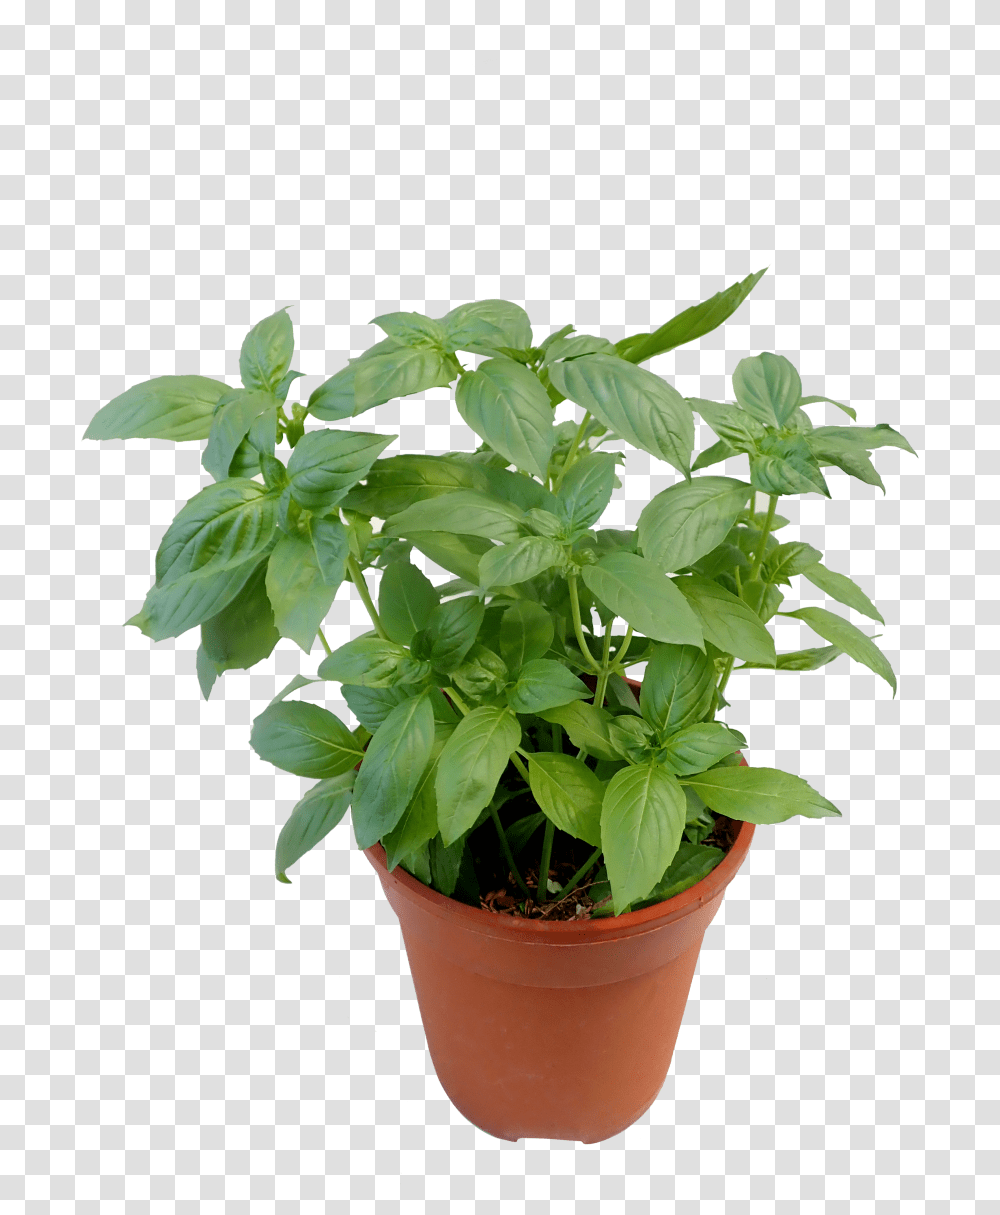 Sweet Basil Sweet Basil Plant, Leaf, Potted Plant, Vase, Jar Transparent Png